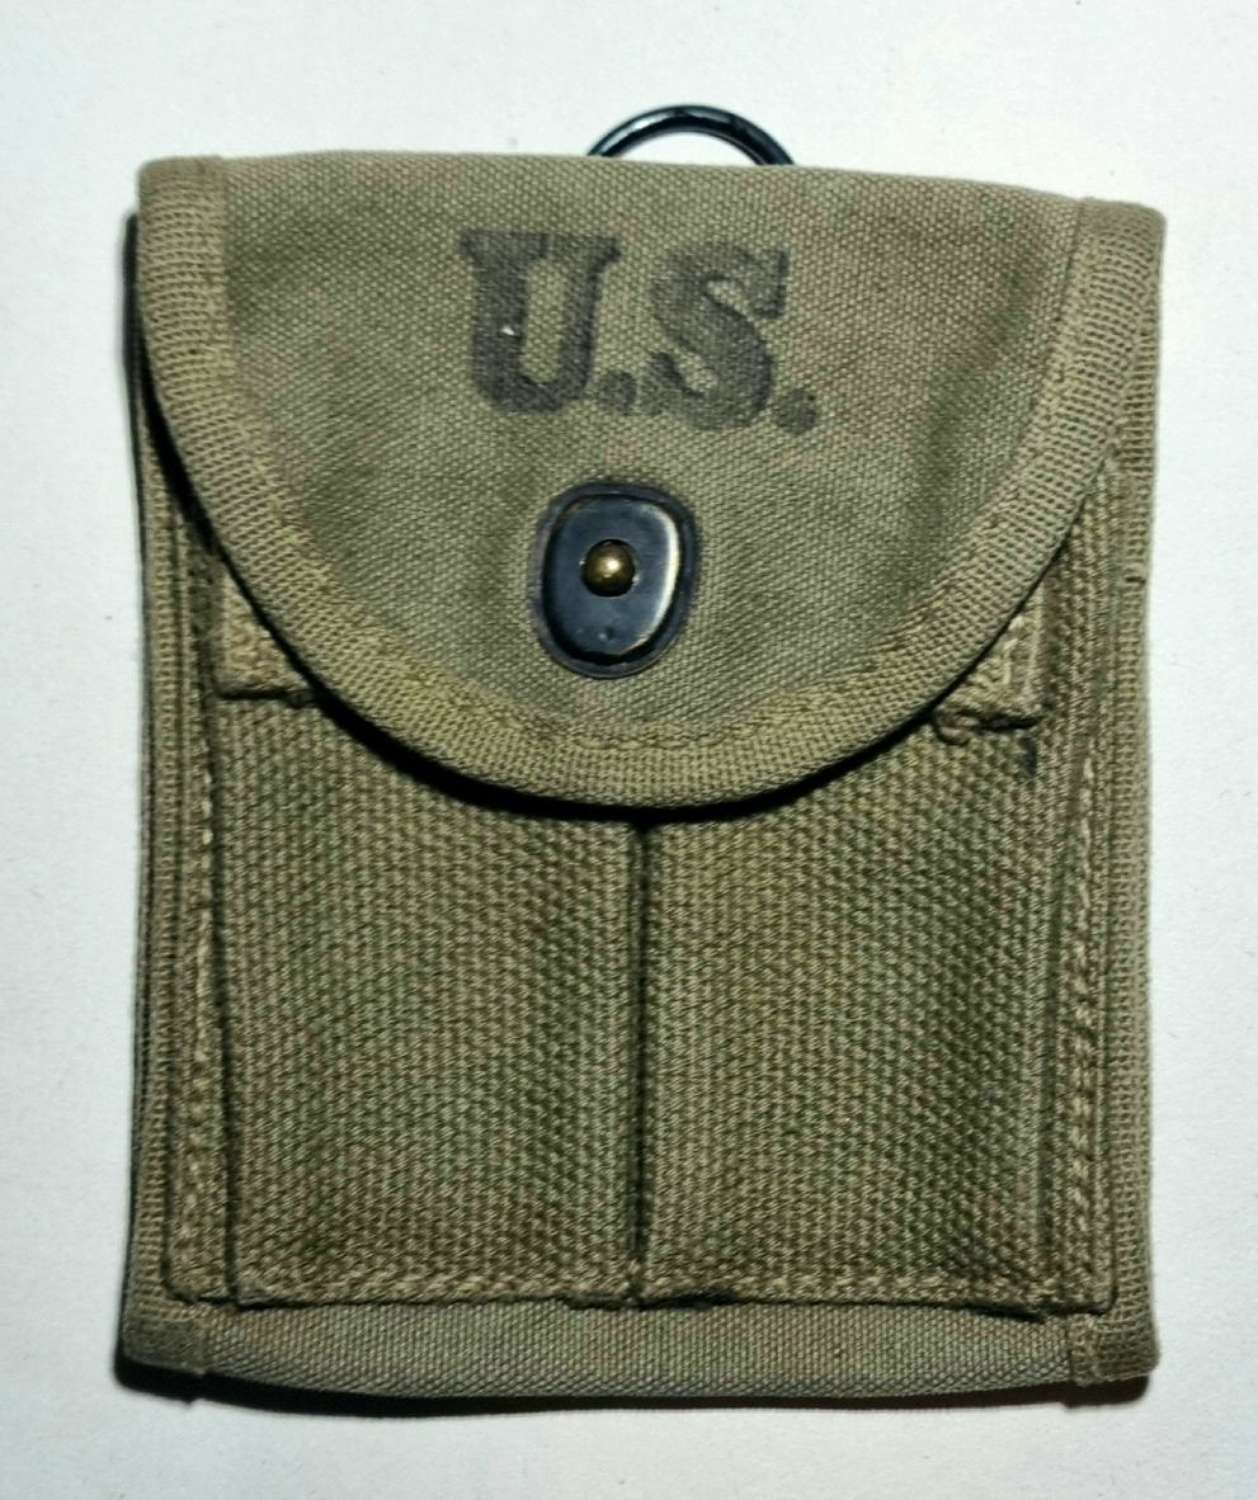 WW2 U.S M1 carbine ammo pouch